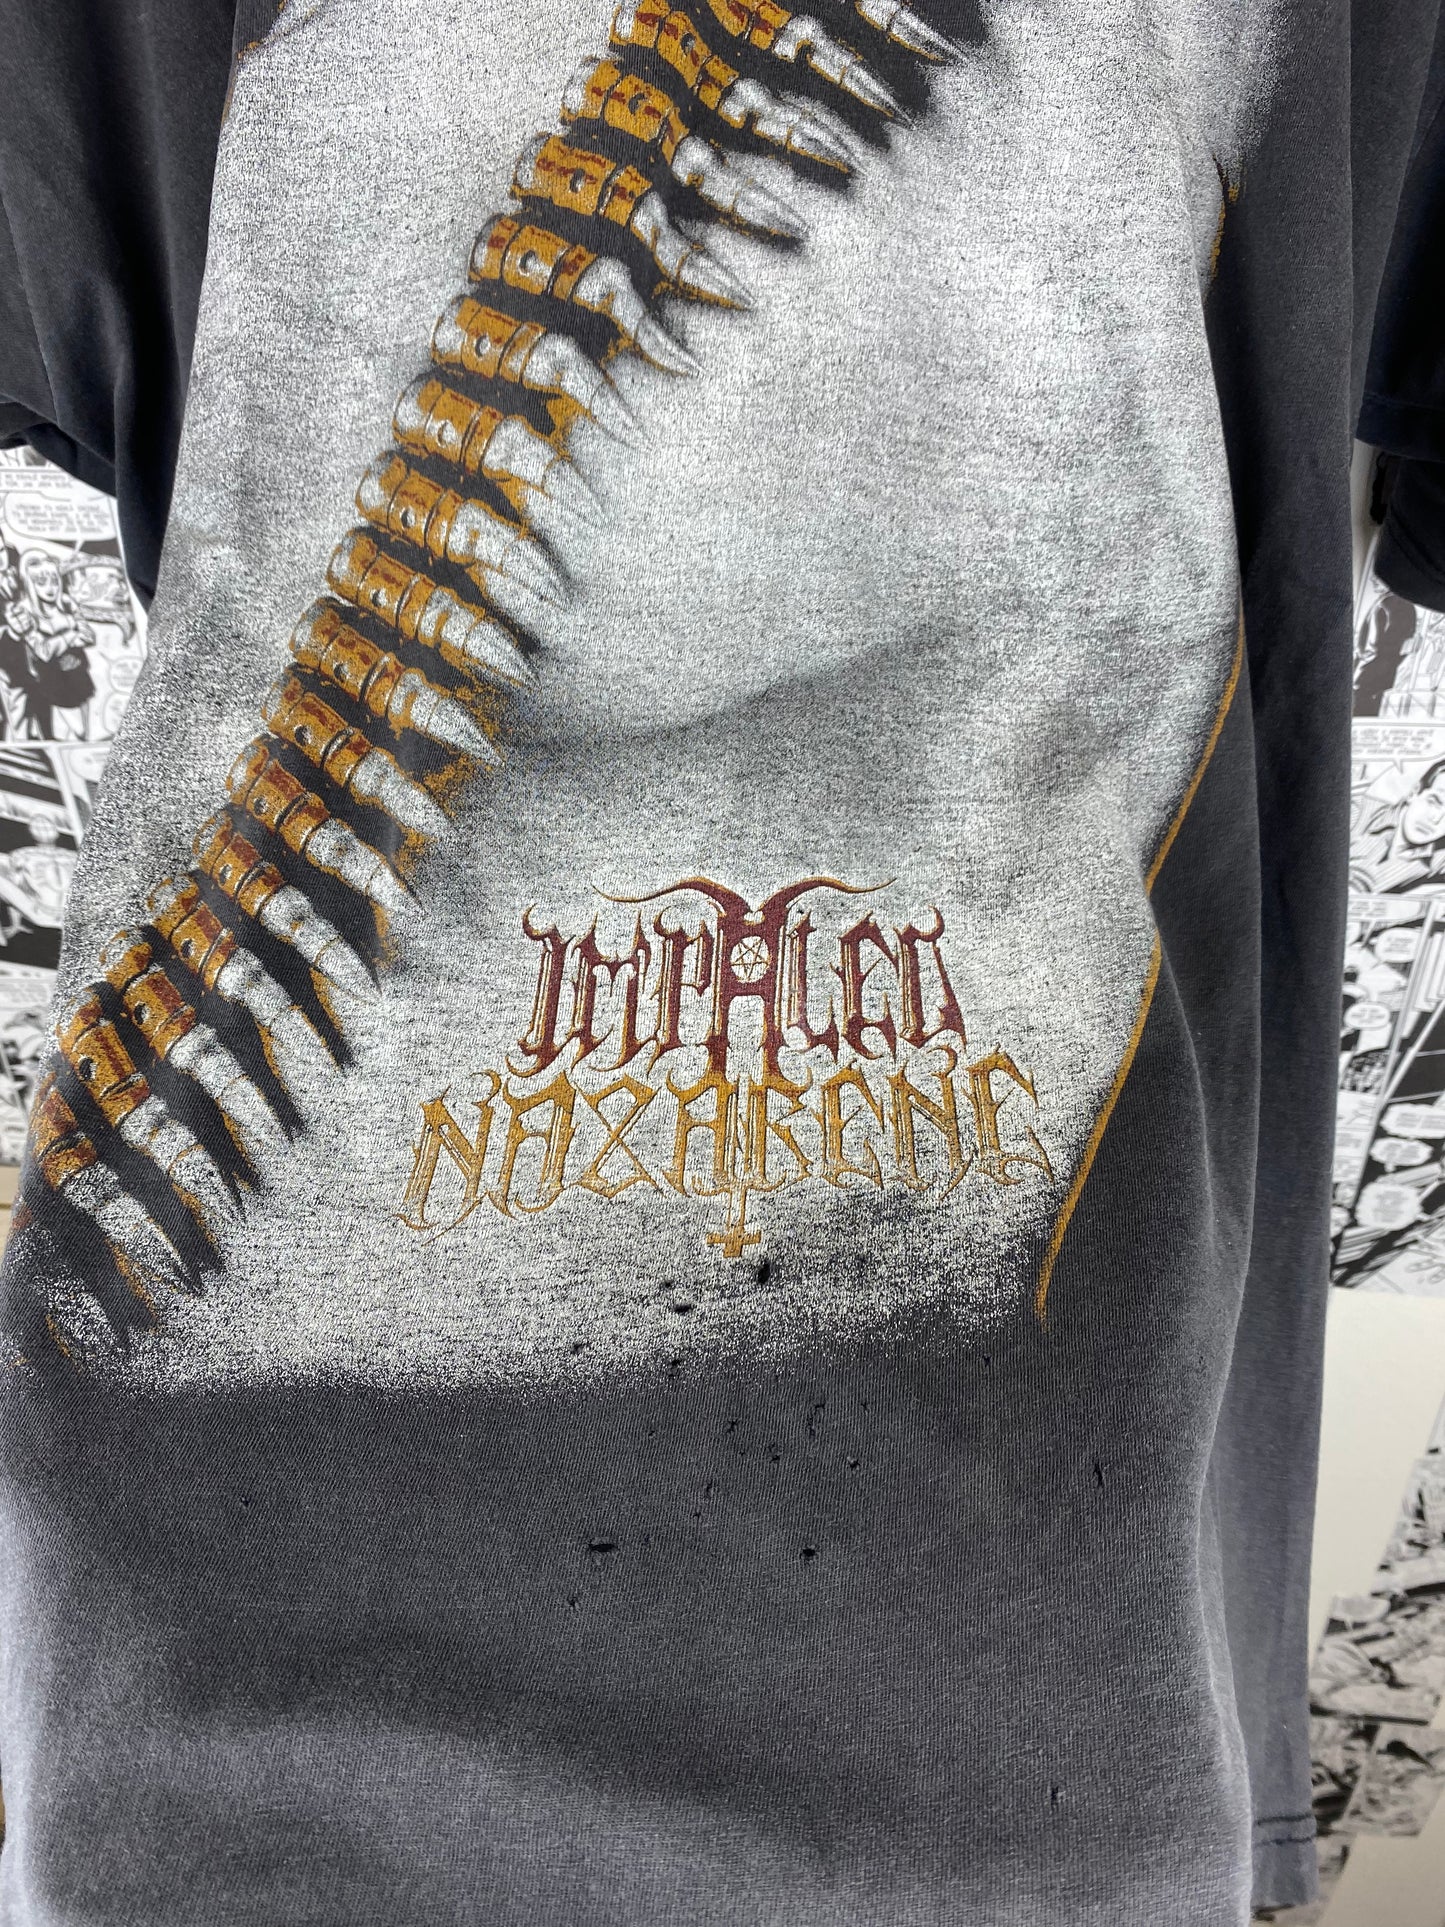 Vintage Impaled Nazarene 2001 t-shirt - size XL